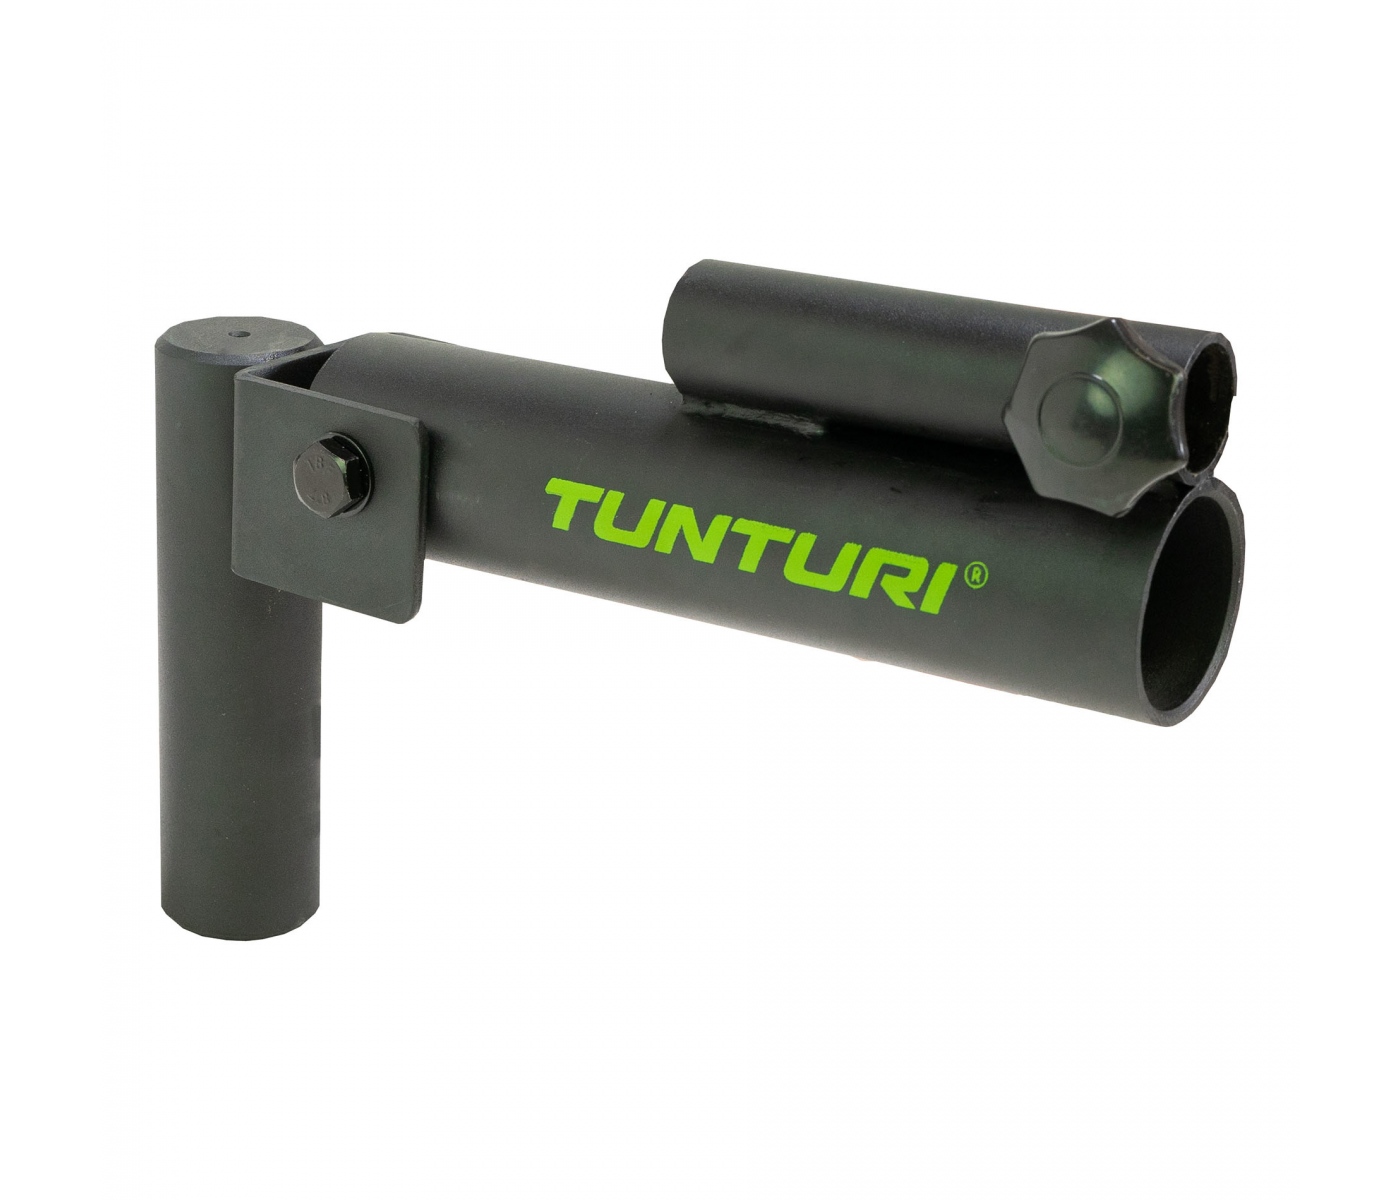 Brug Tunturi Landmine/Torsonator til en forbedret oplevelse